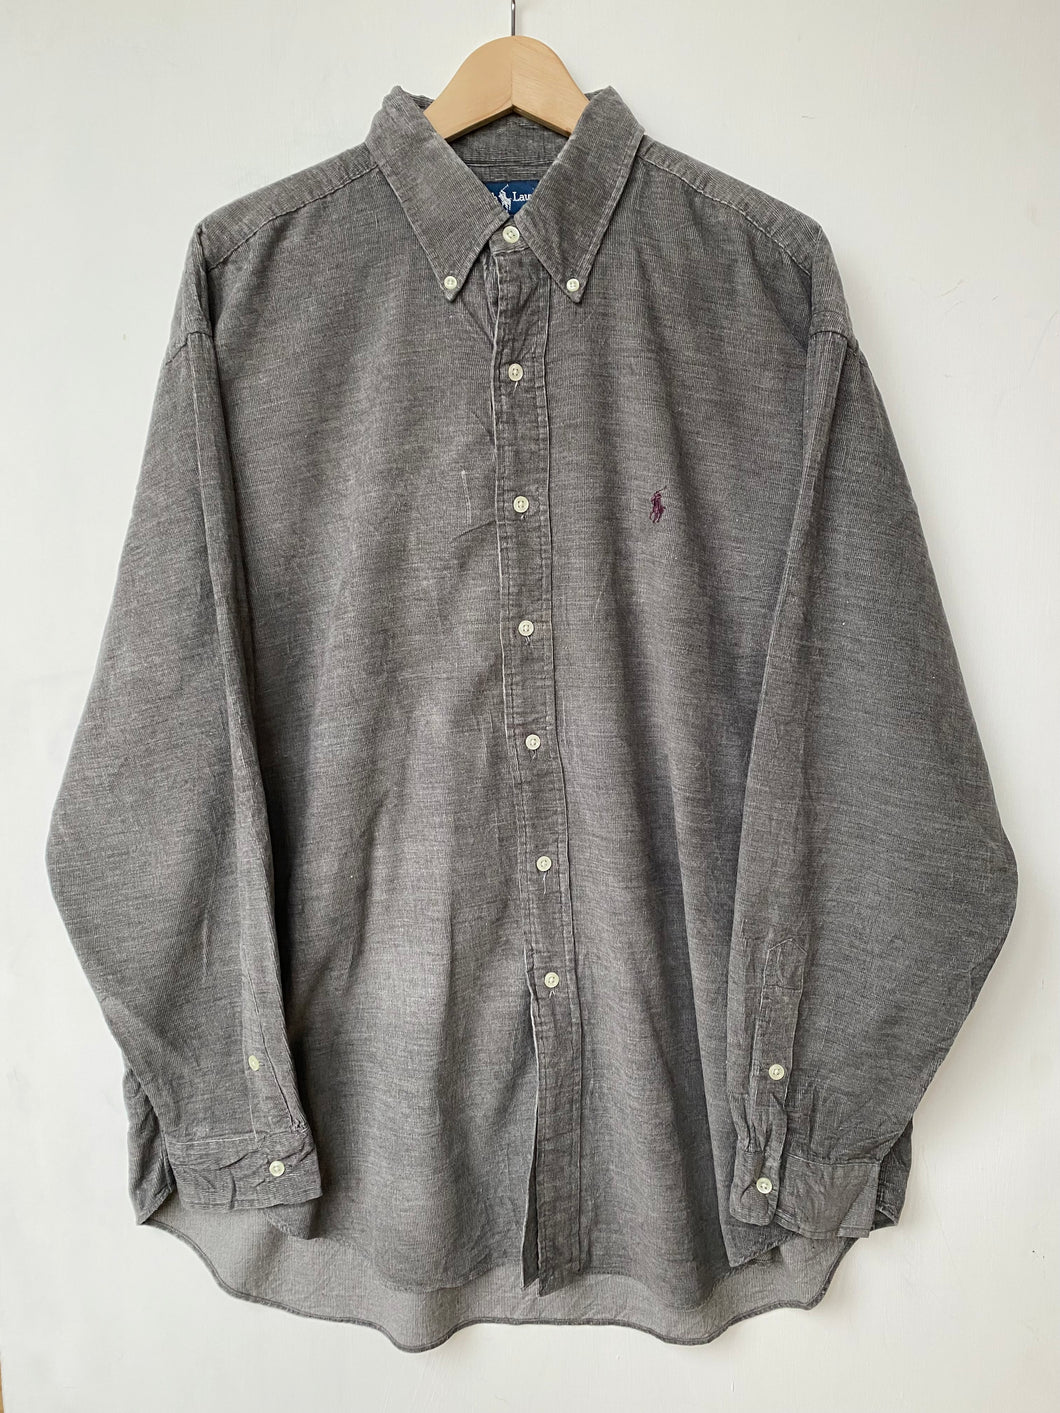 Ralph Lauren Cord shirt (XL)